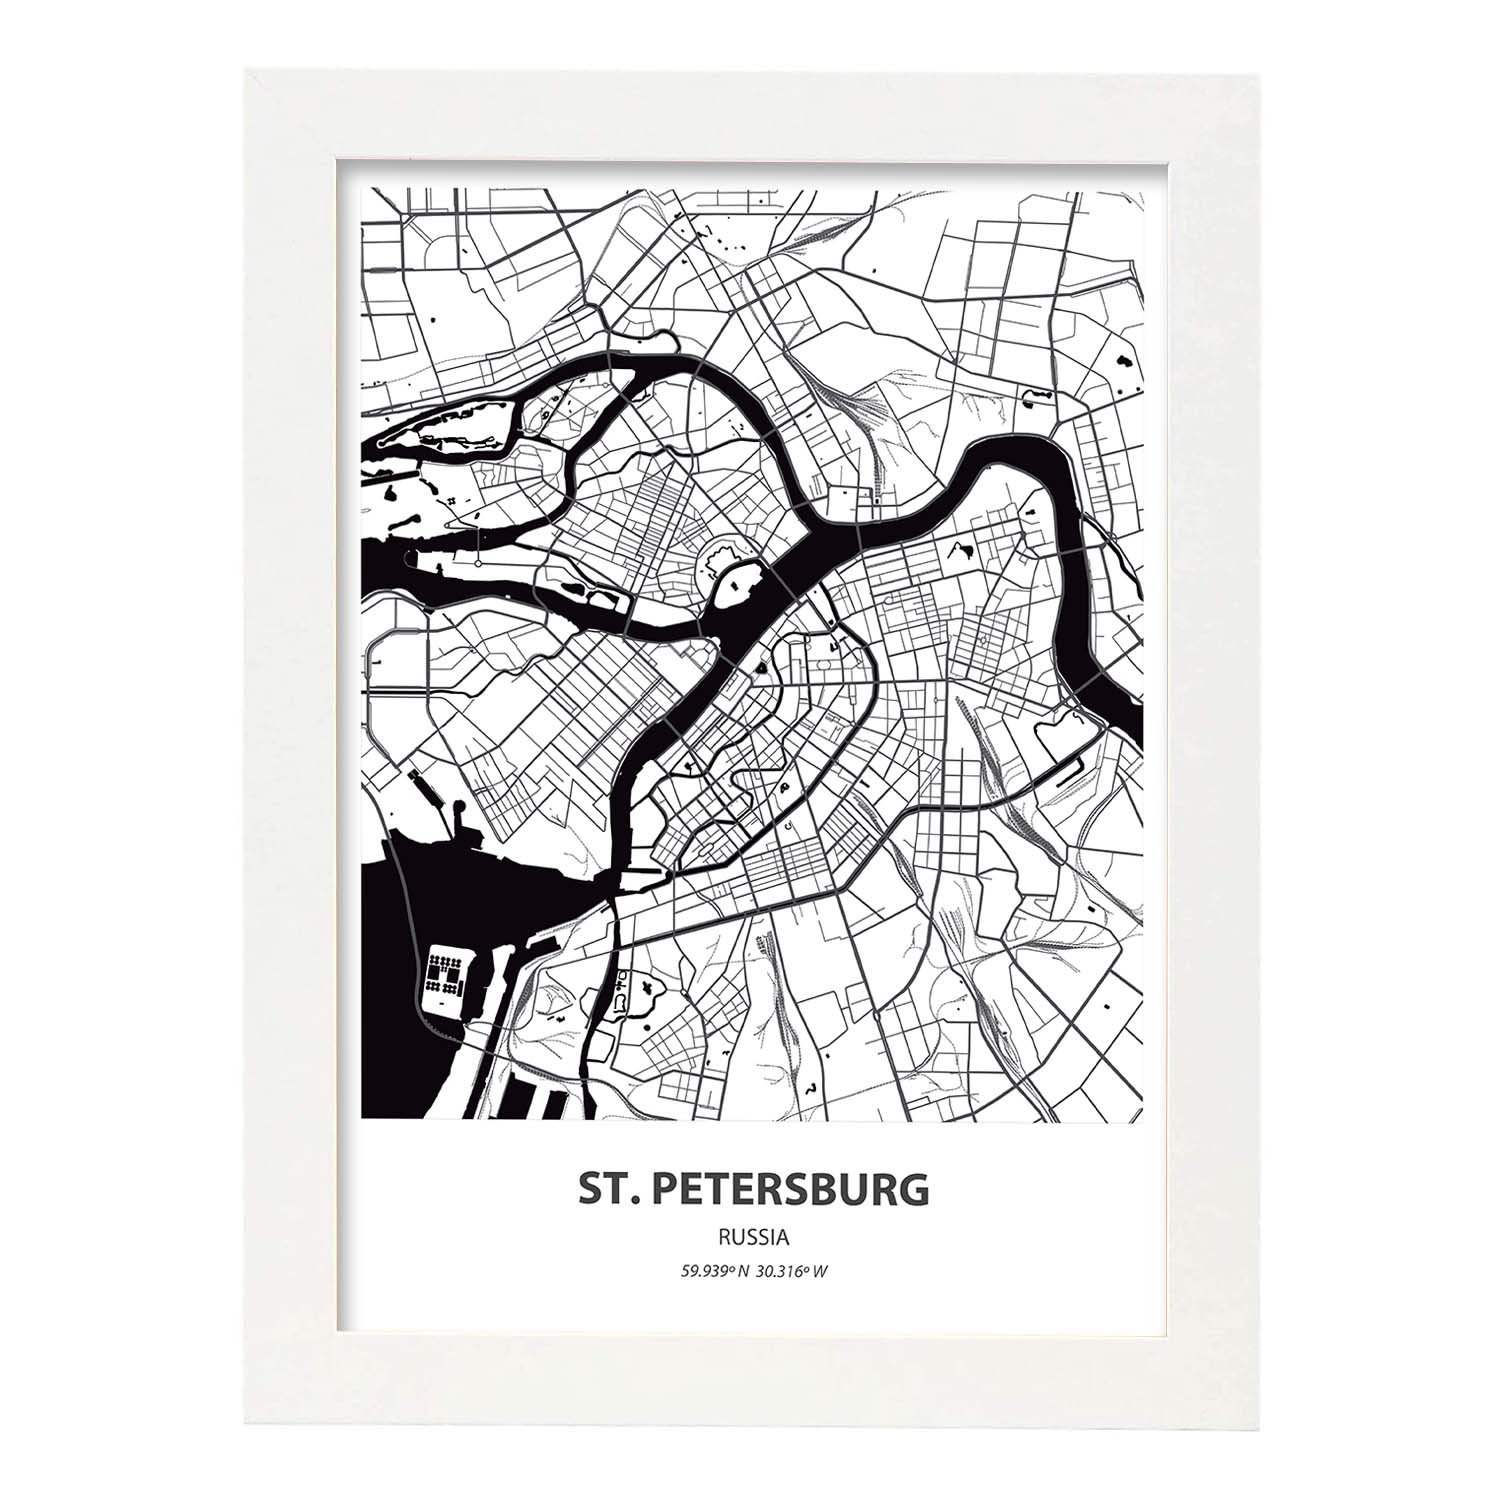 Poster con mapa de St. Petersburg - Rusia. Láminas de ciudades de Asia con mares y ríos en color negro.-Artwork-Nacnic-A4-Marco Blanco-Nacnic Estudio SL